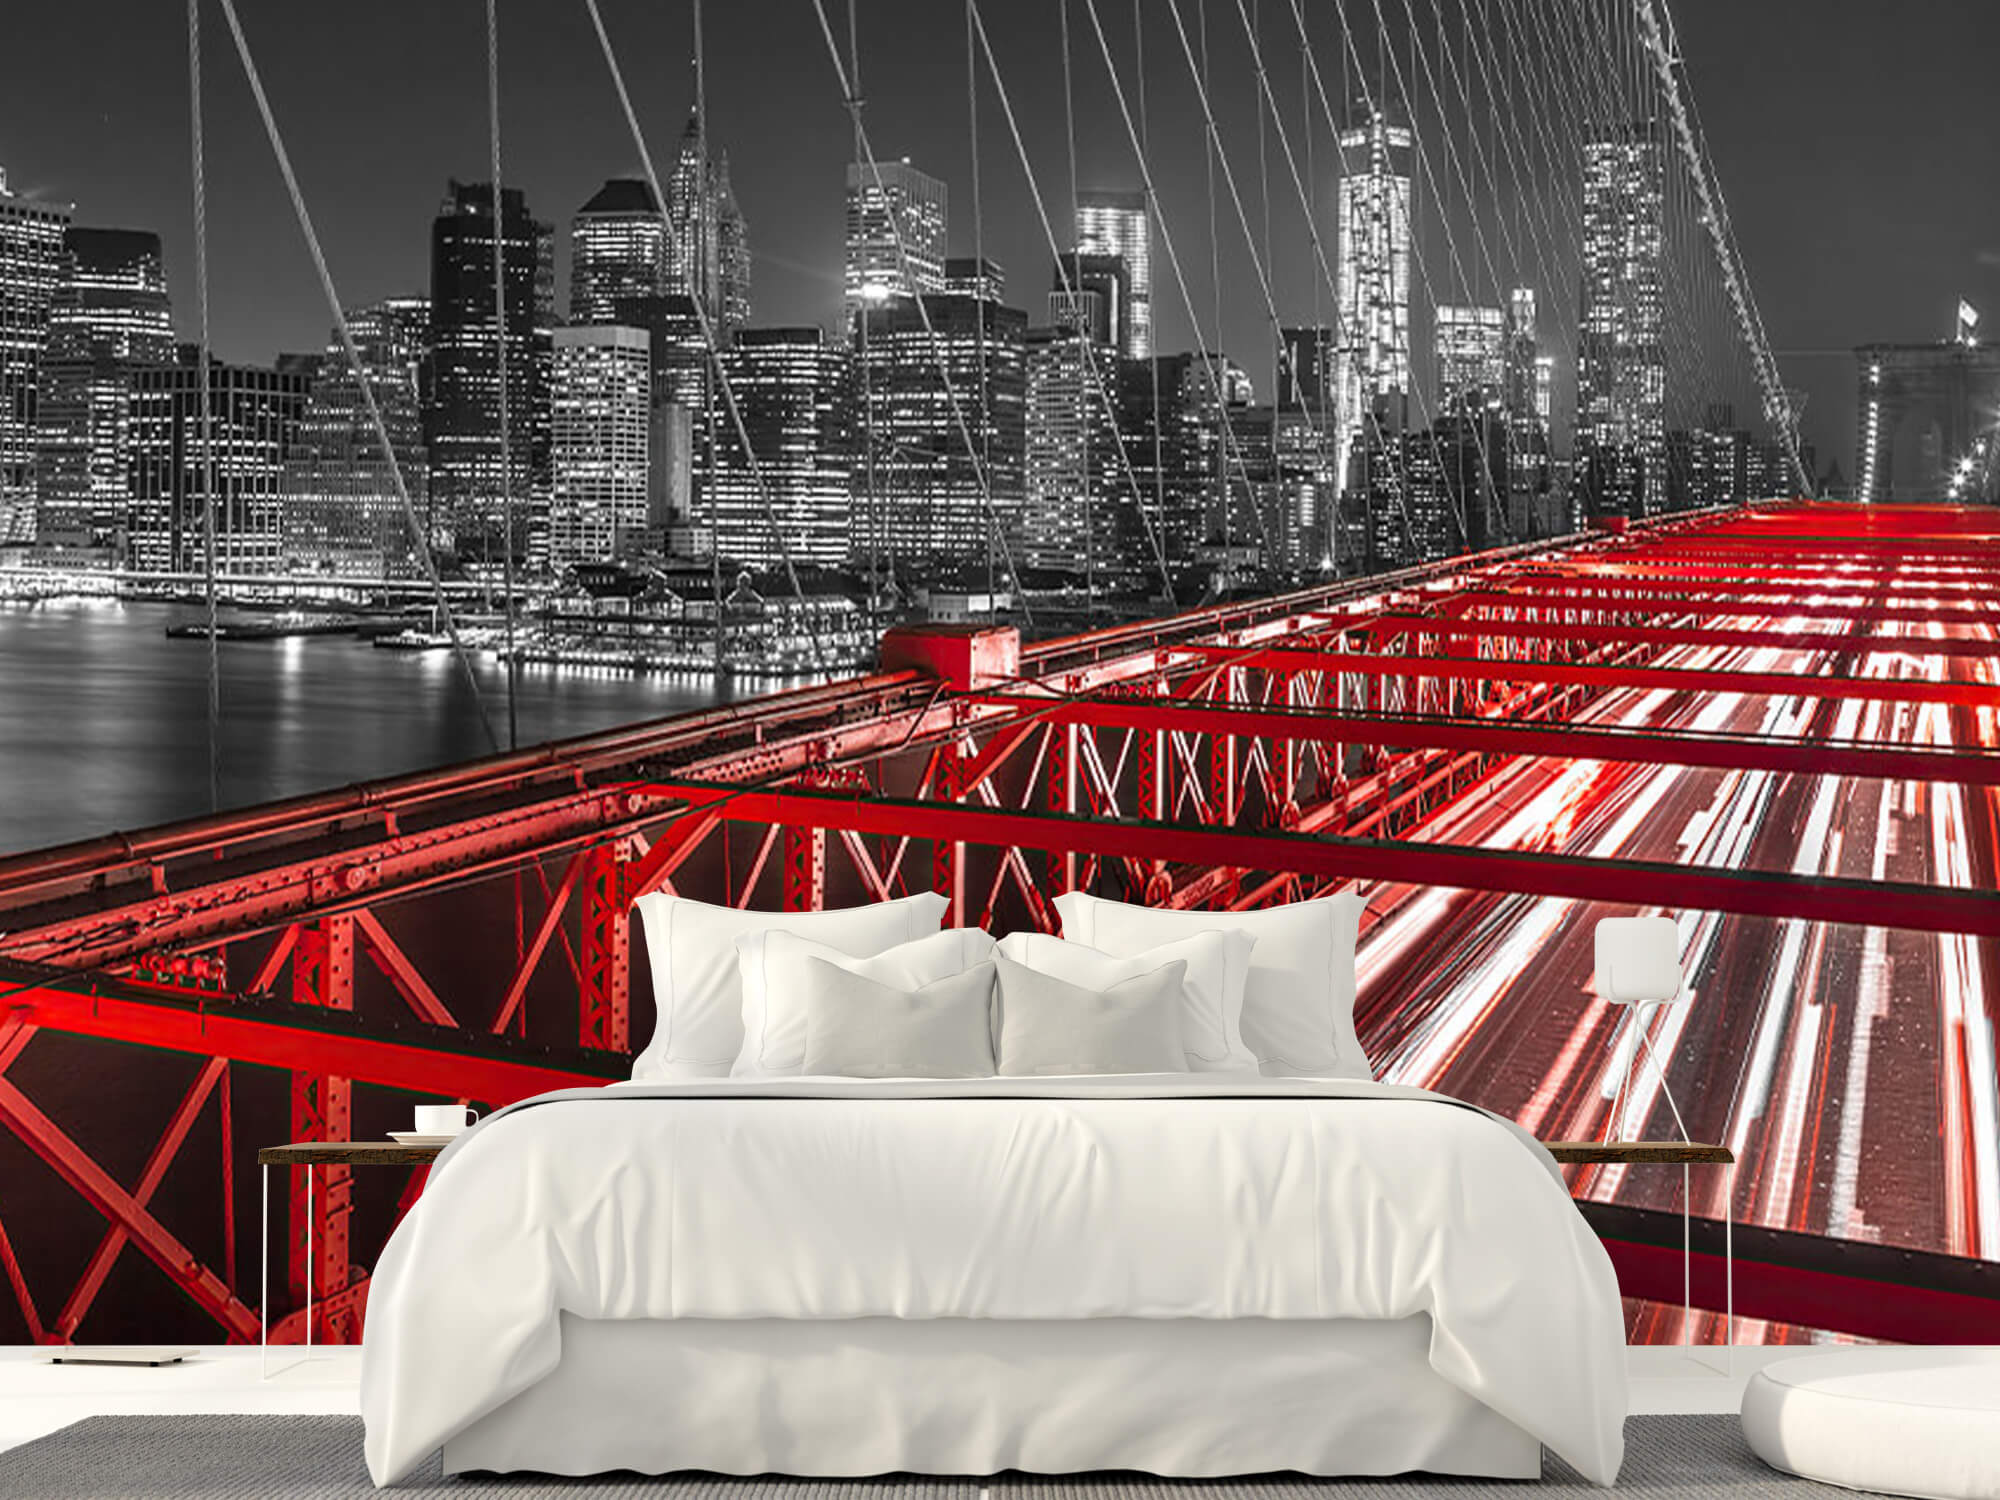  Papel pintado con Puente rojo de Brooklyn - Habitación de adolescentes 15